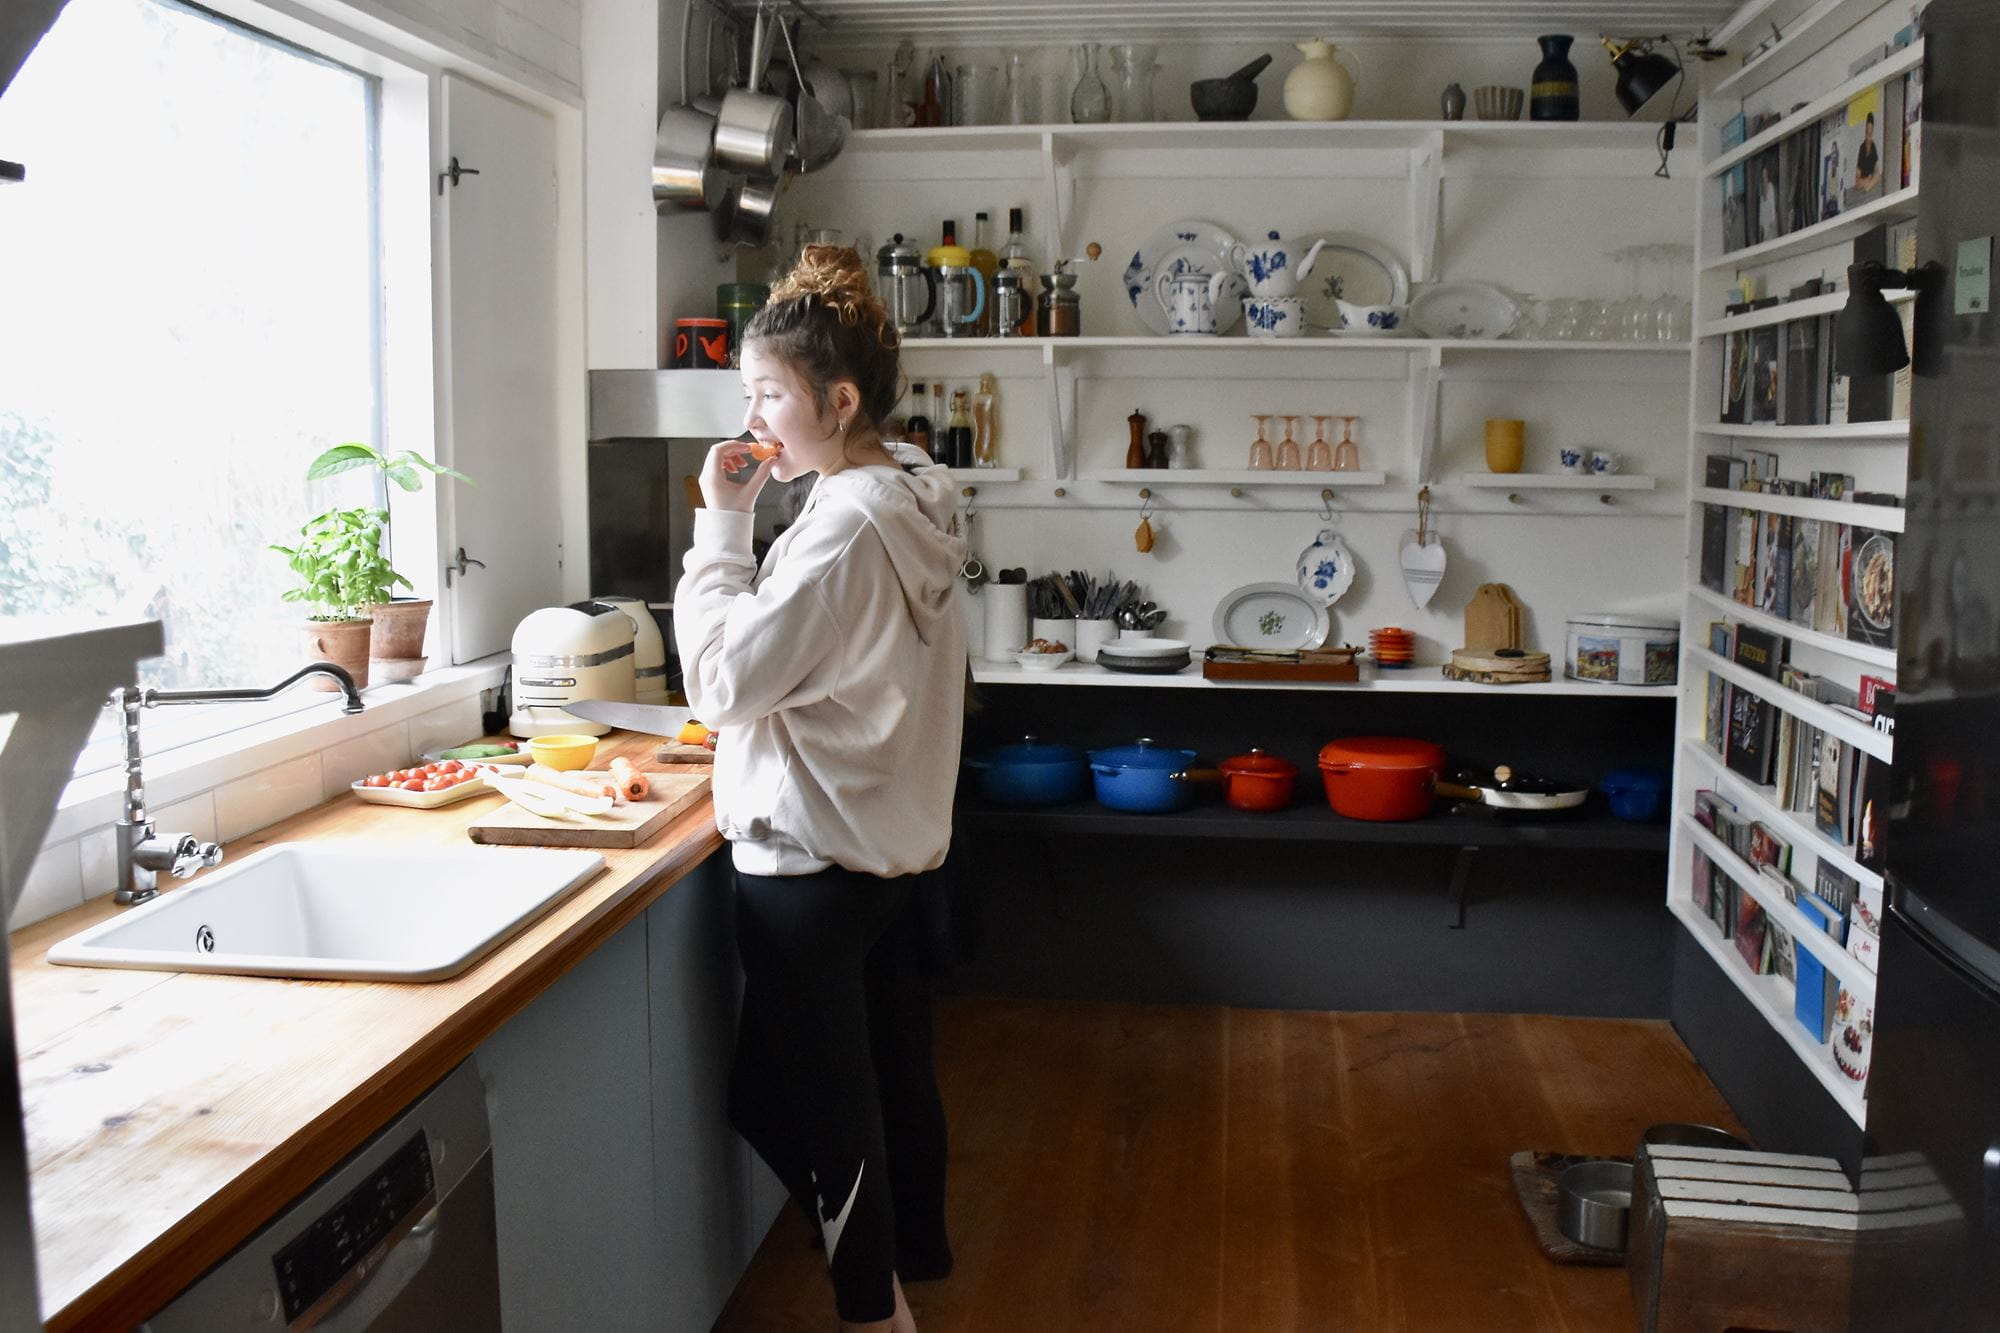 Ny skal øge levetiden for de danske køkkener med bæredygtige løsninger